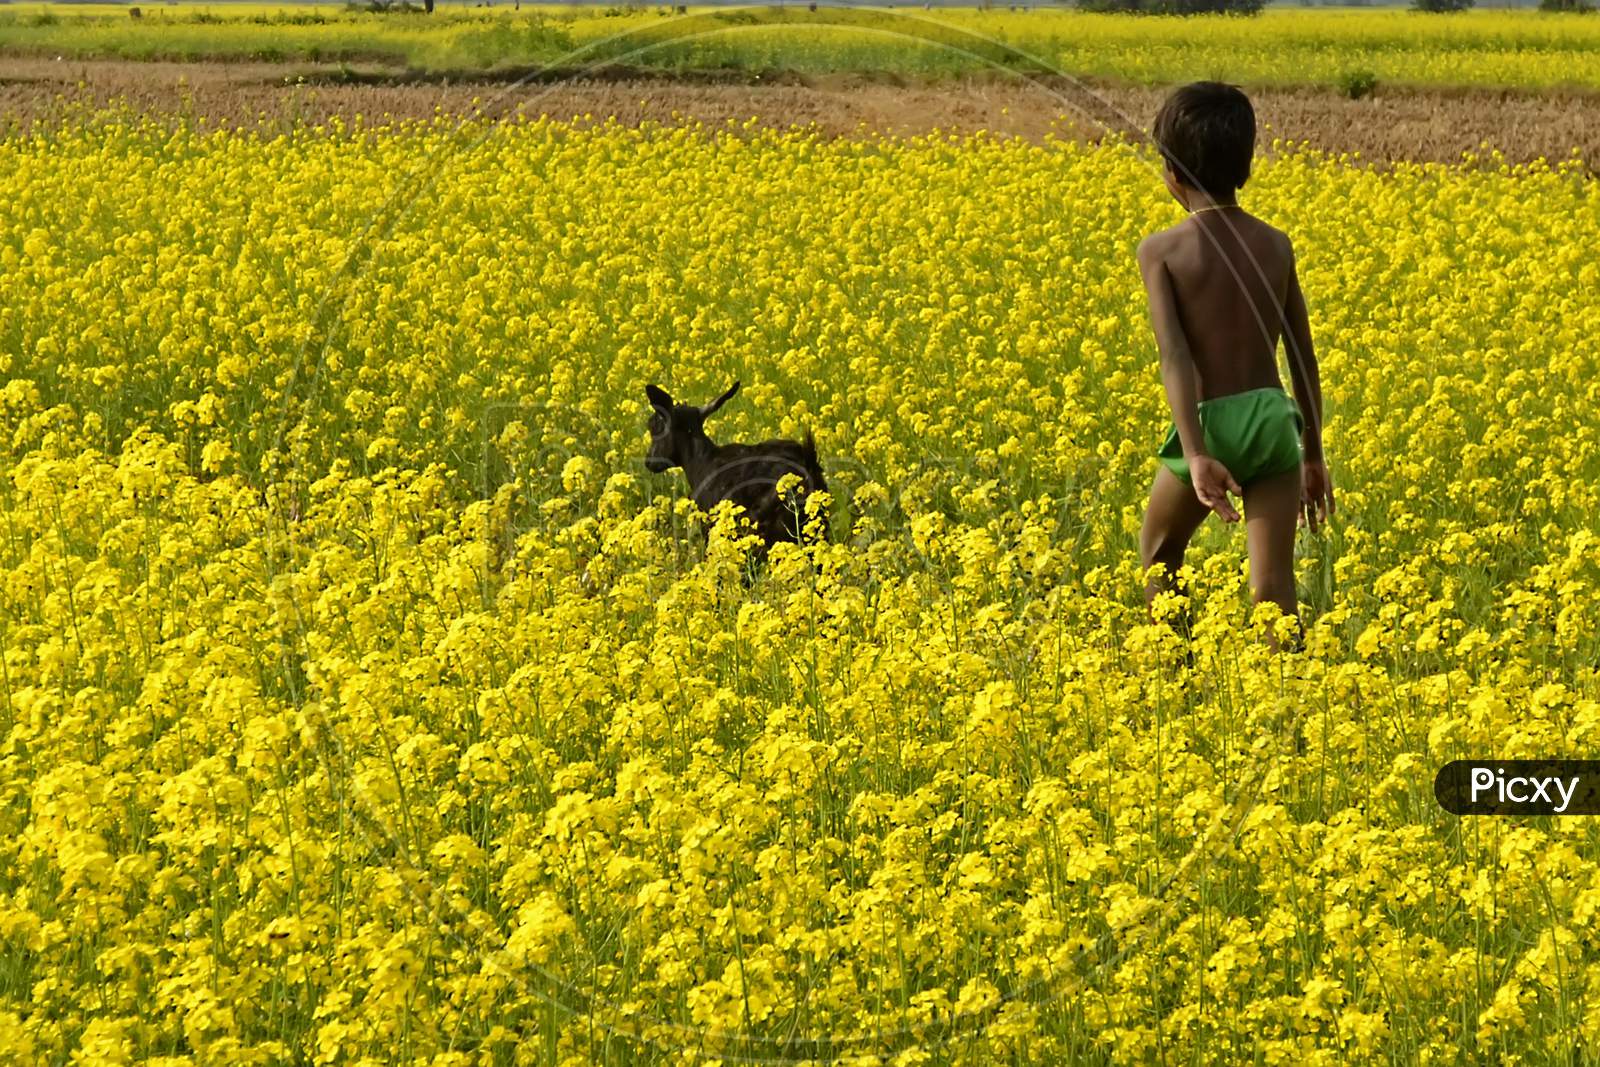 A boy walking in mustard field